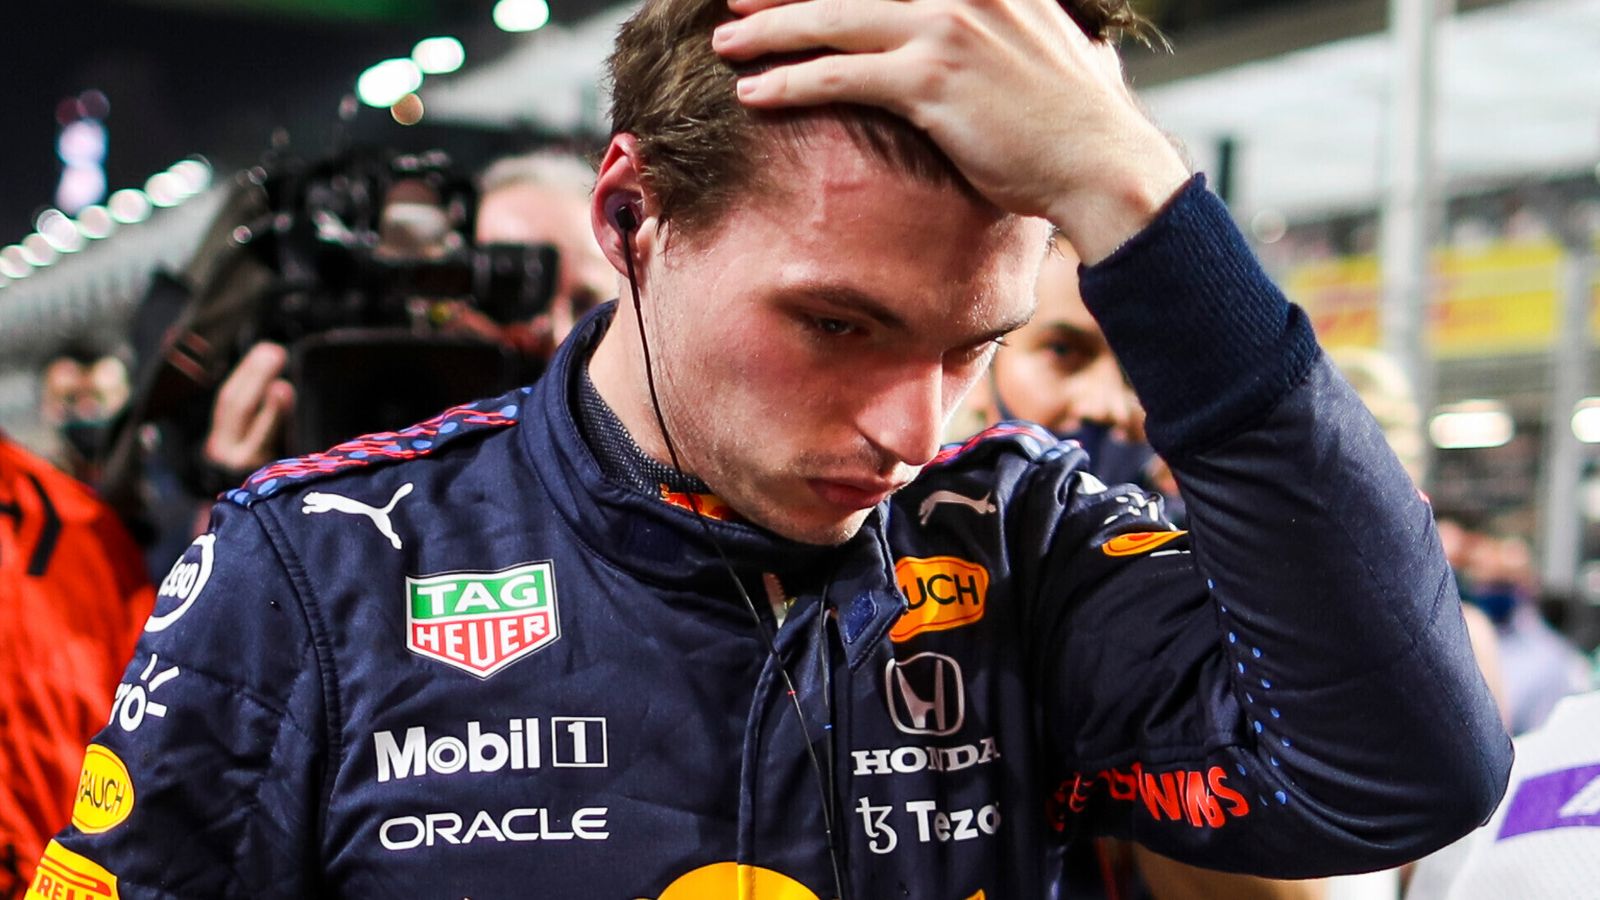 ¿Verstappen lo llevó demasiado lejos?  |  Max quiere 'carreras adecuadas'